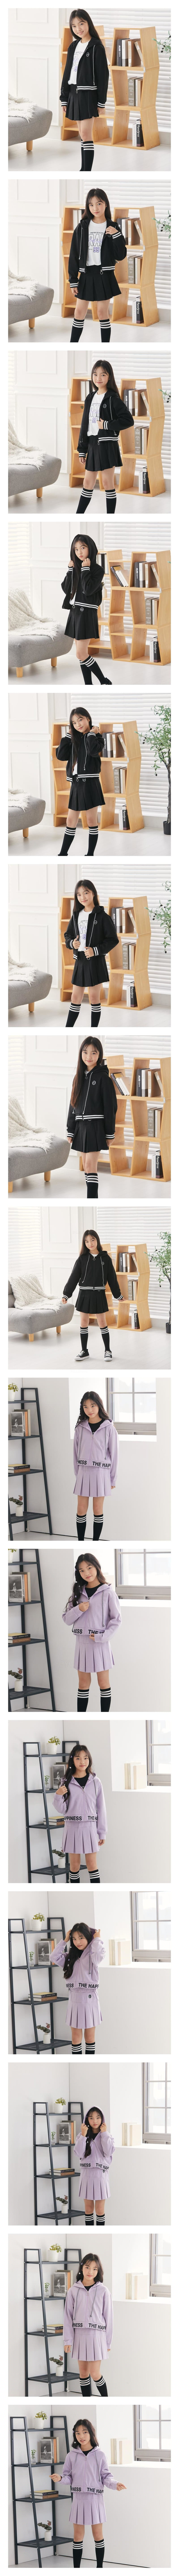 Dawon - Korean Children Fashion - #todddlerfashion - Hoody Zip-up Jumper